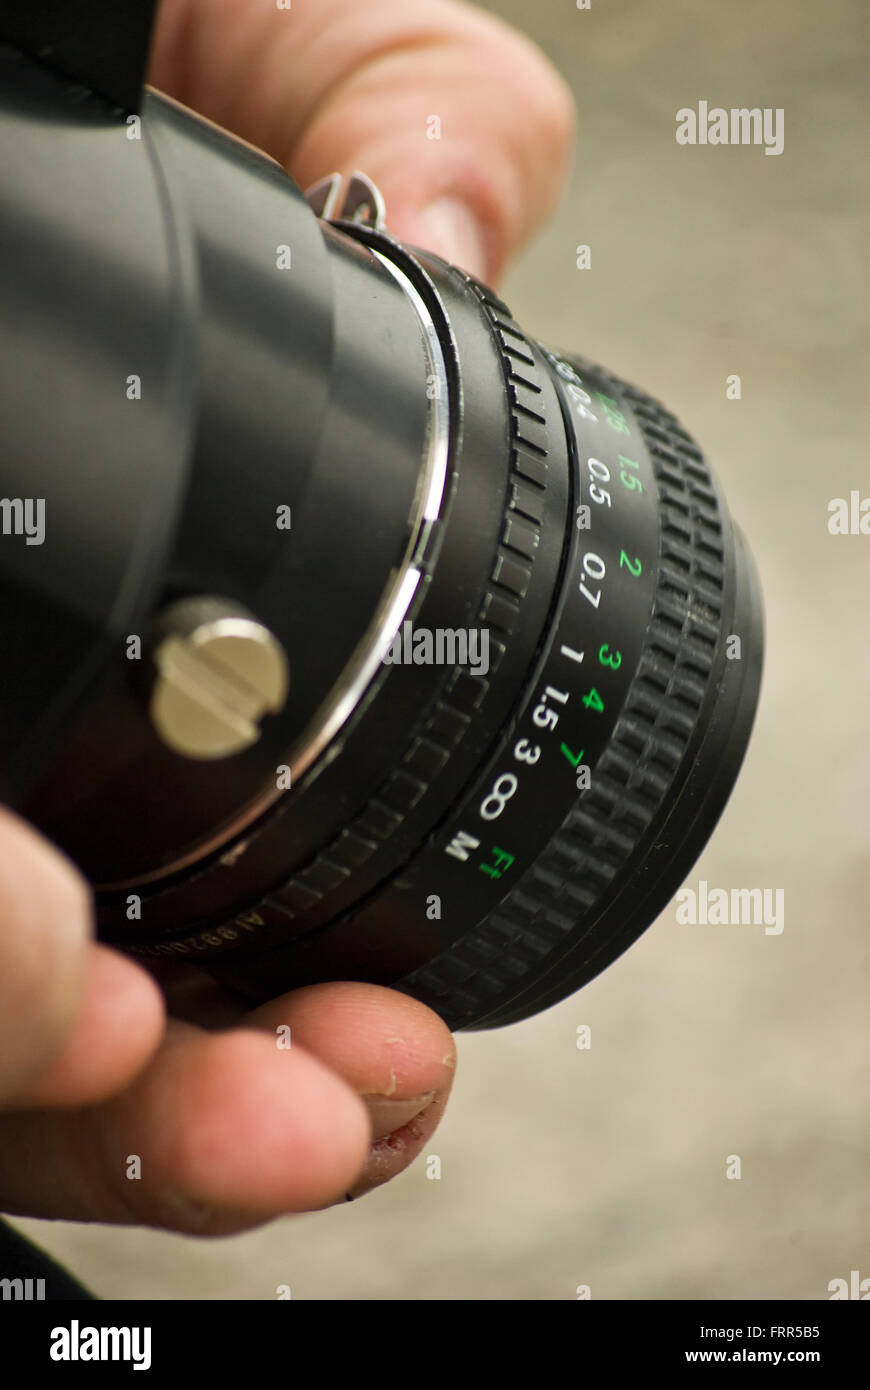 La mise au point manuelle sur l'objectif des hommes de main de l'appareil photo Banque D'Images